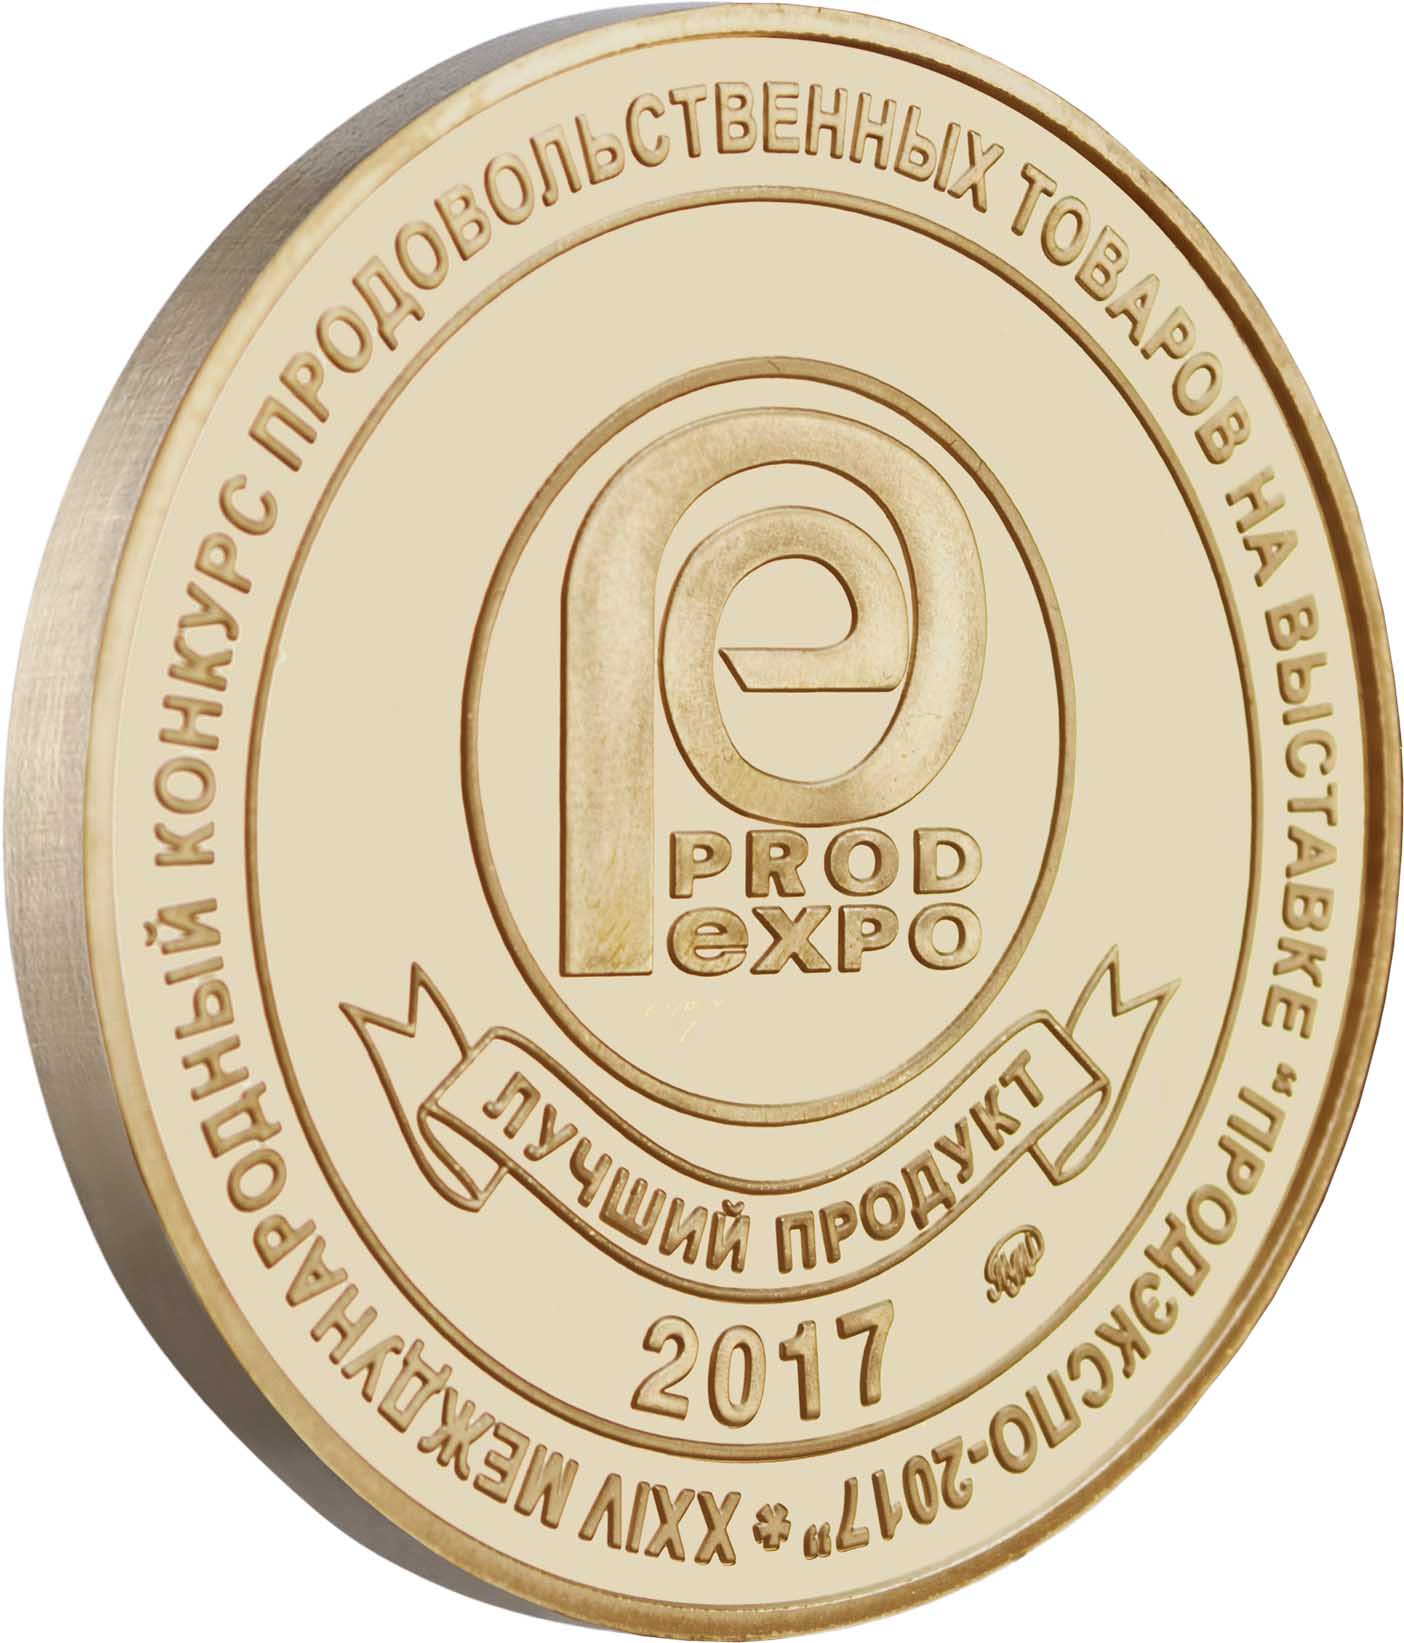 Лучший продукт ПРОД ЭКСПО 2017 - Золотая медаль